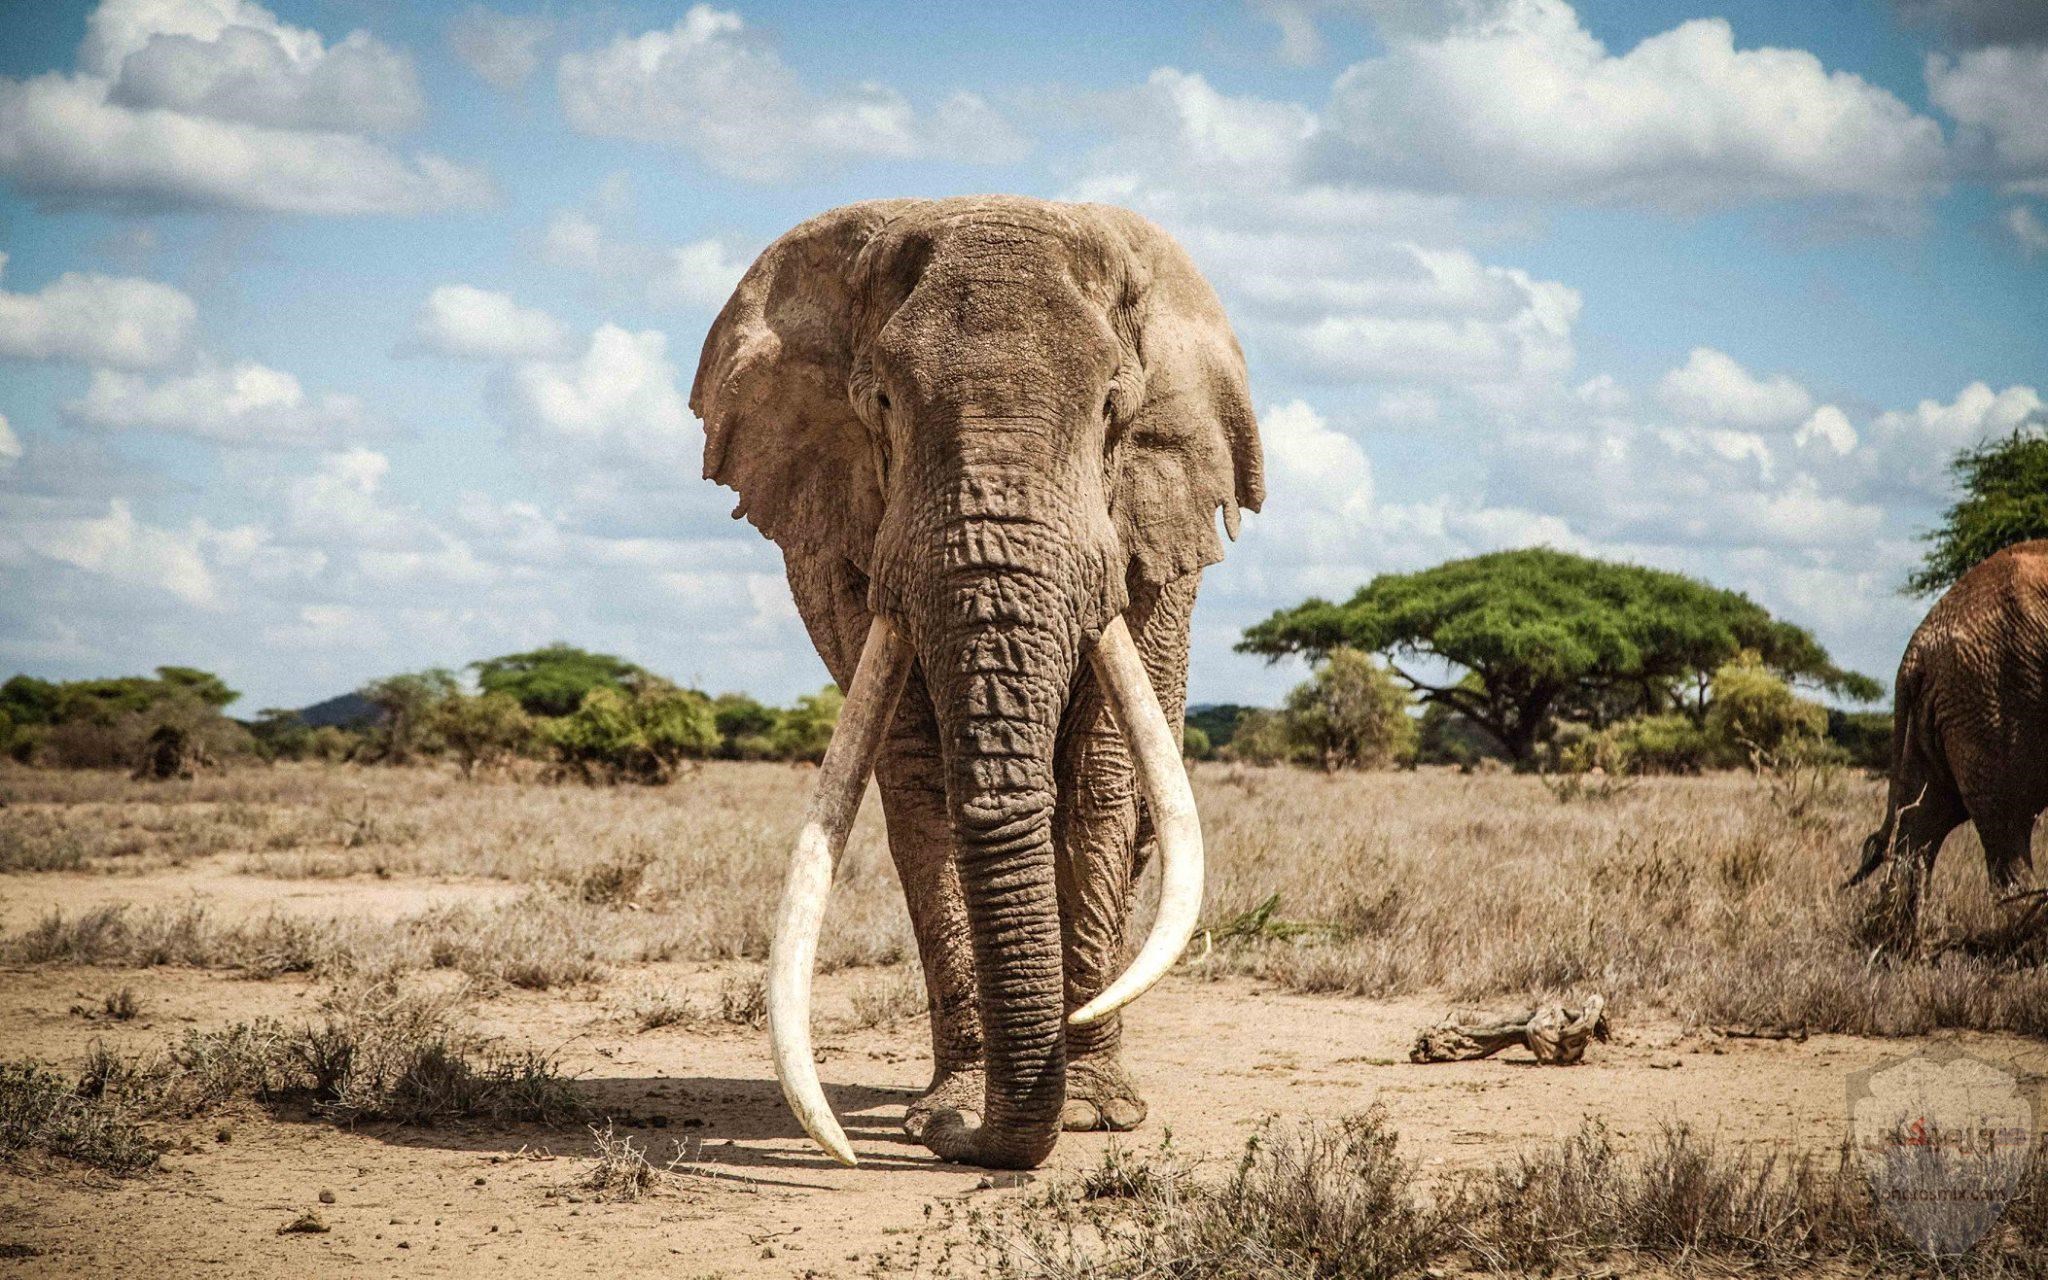 صور افيال أجمل صور فيل 2020 8